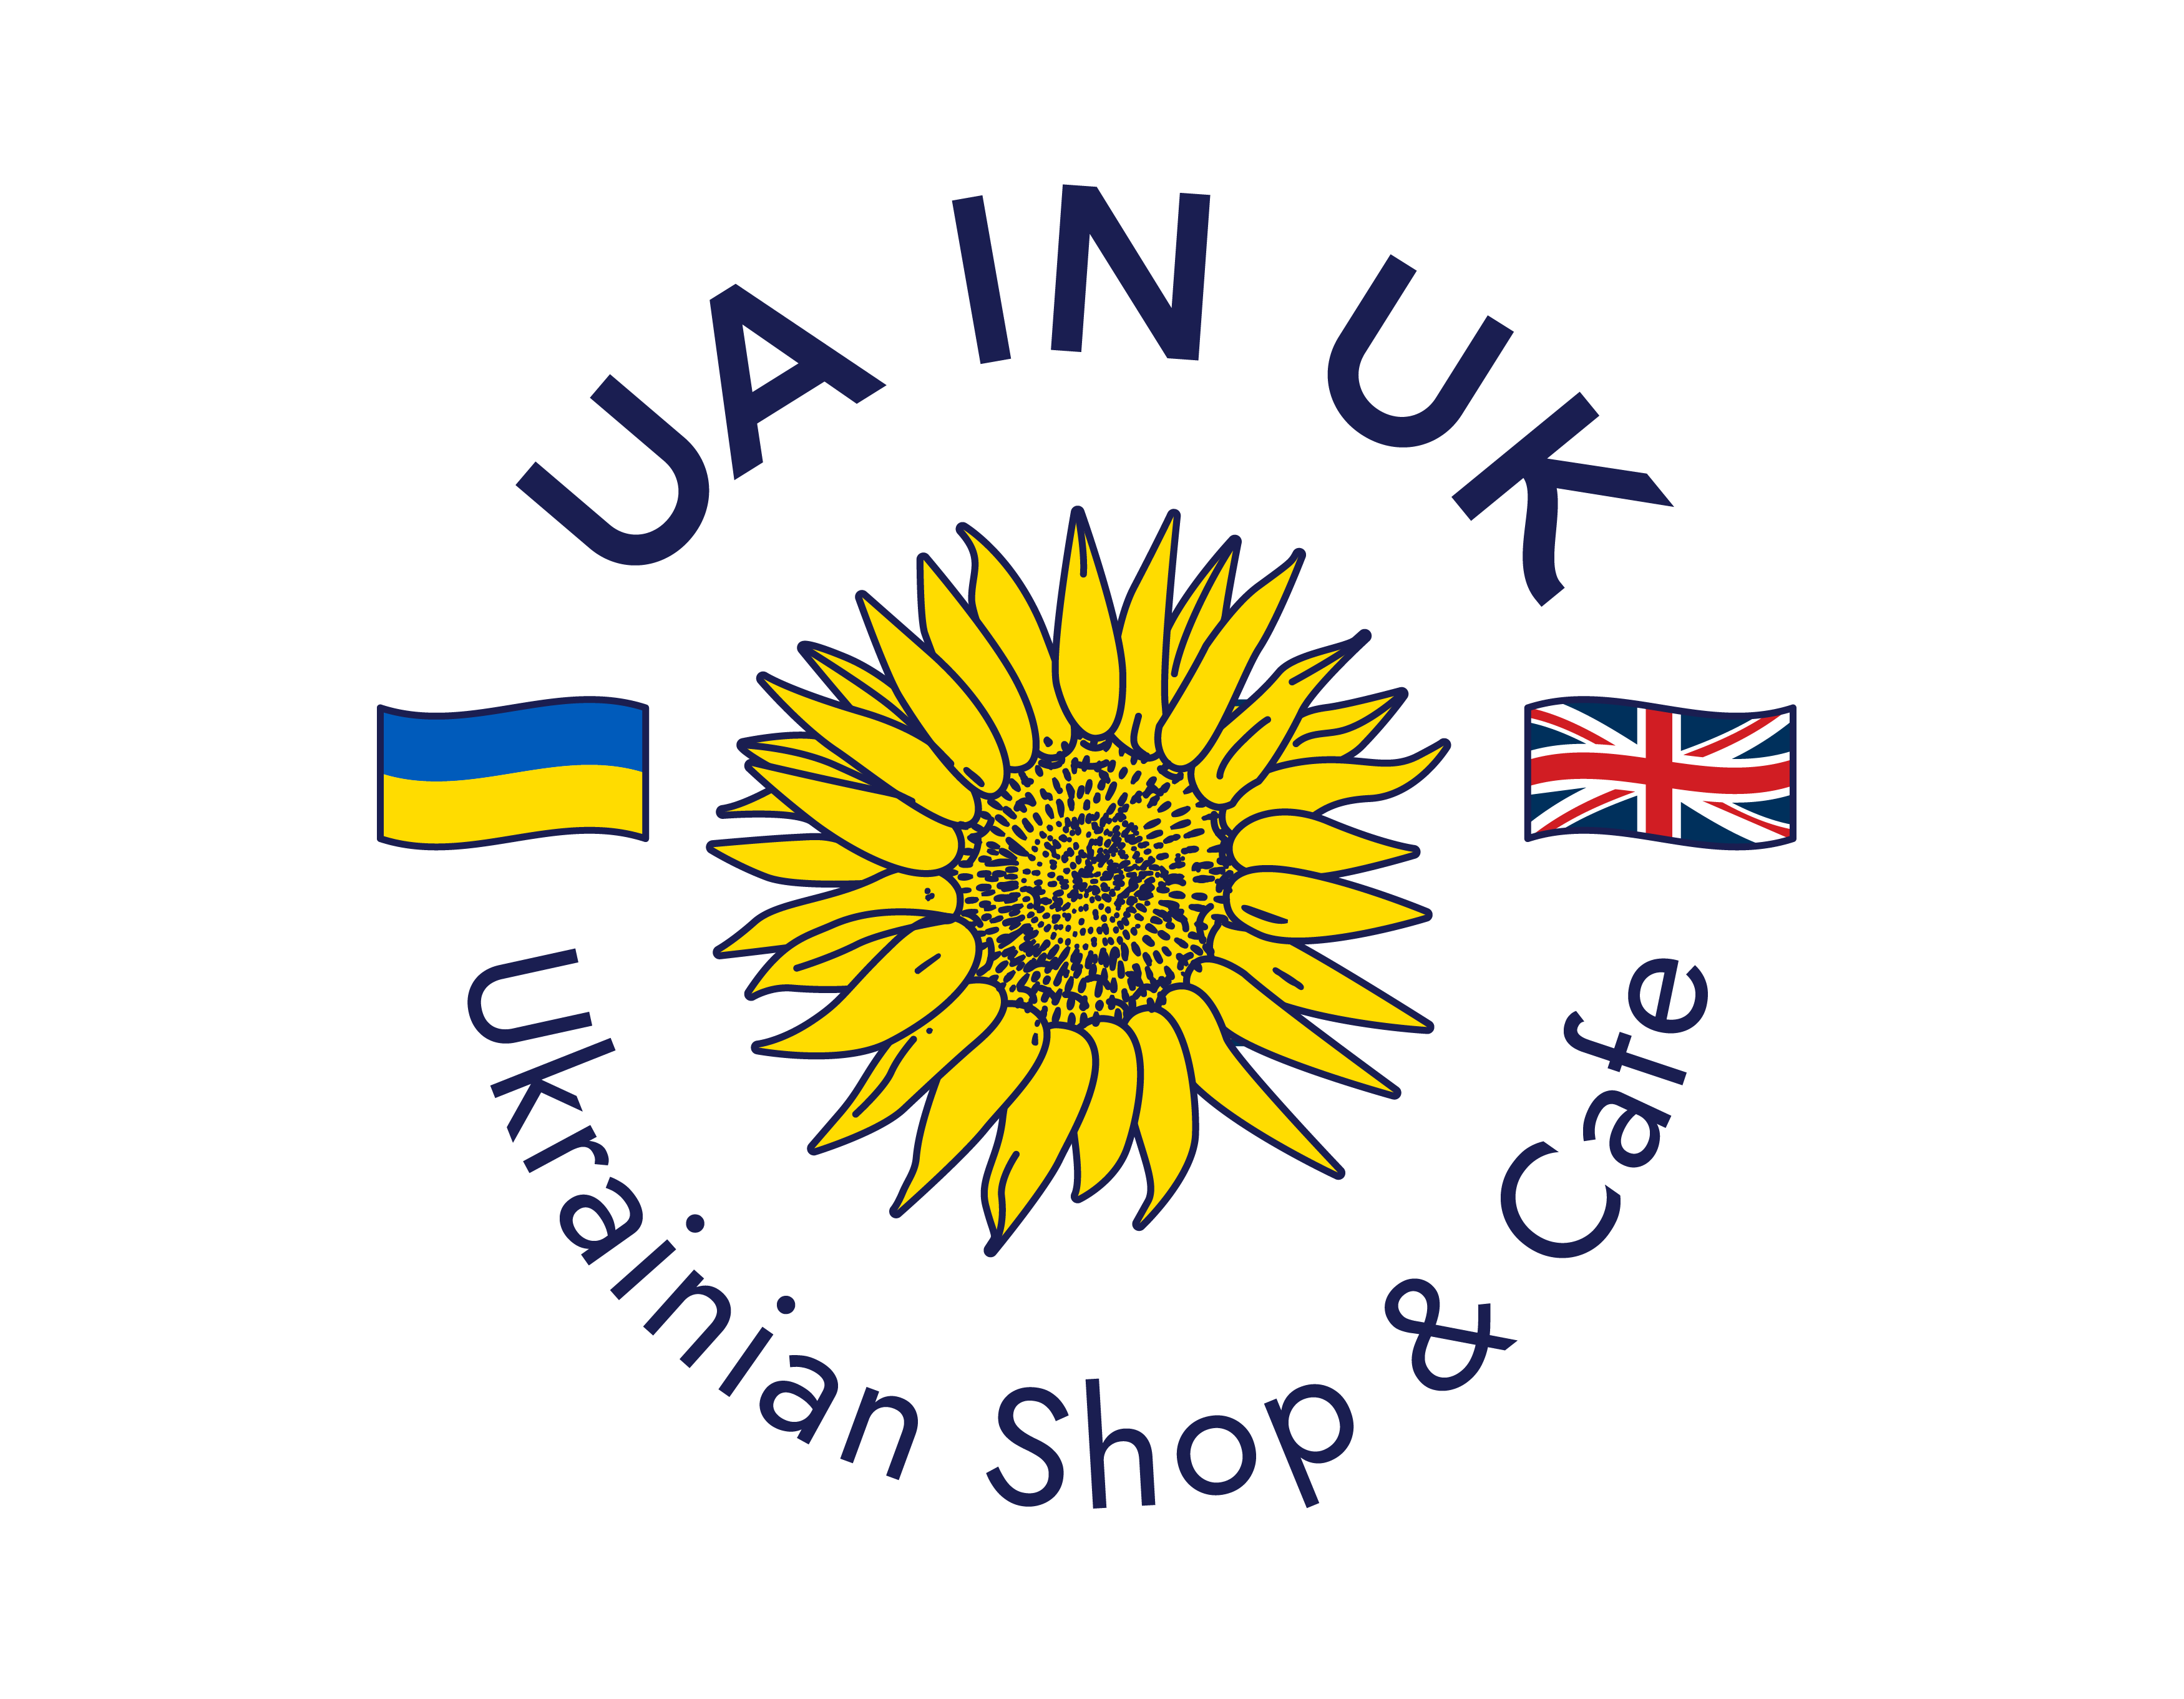 UA in UK Shop